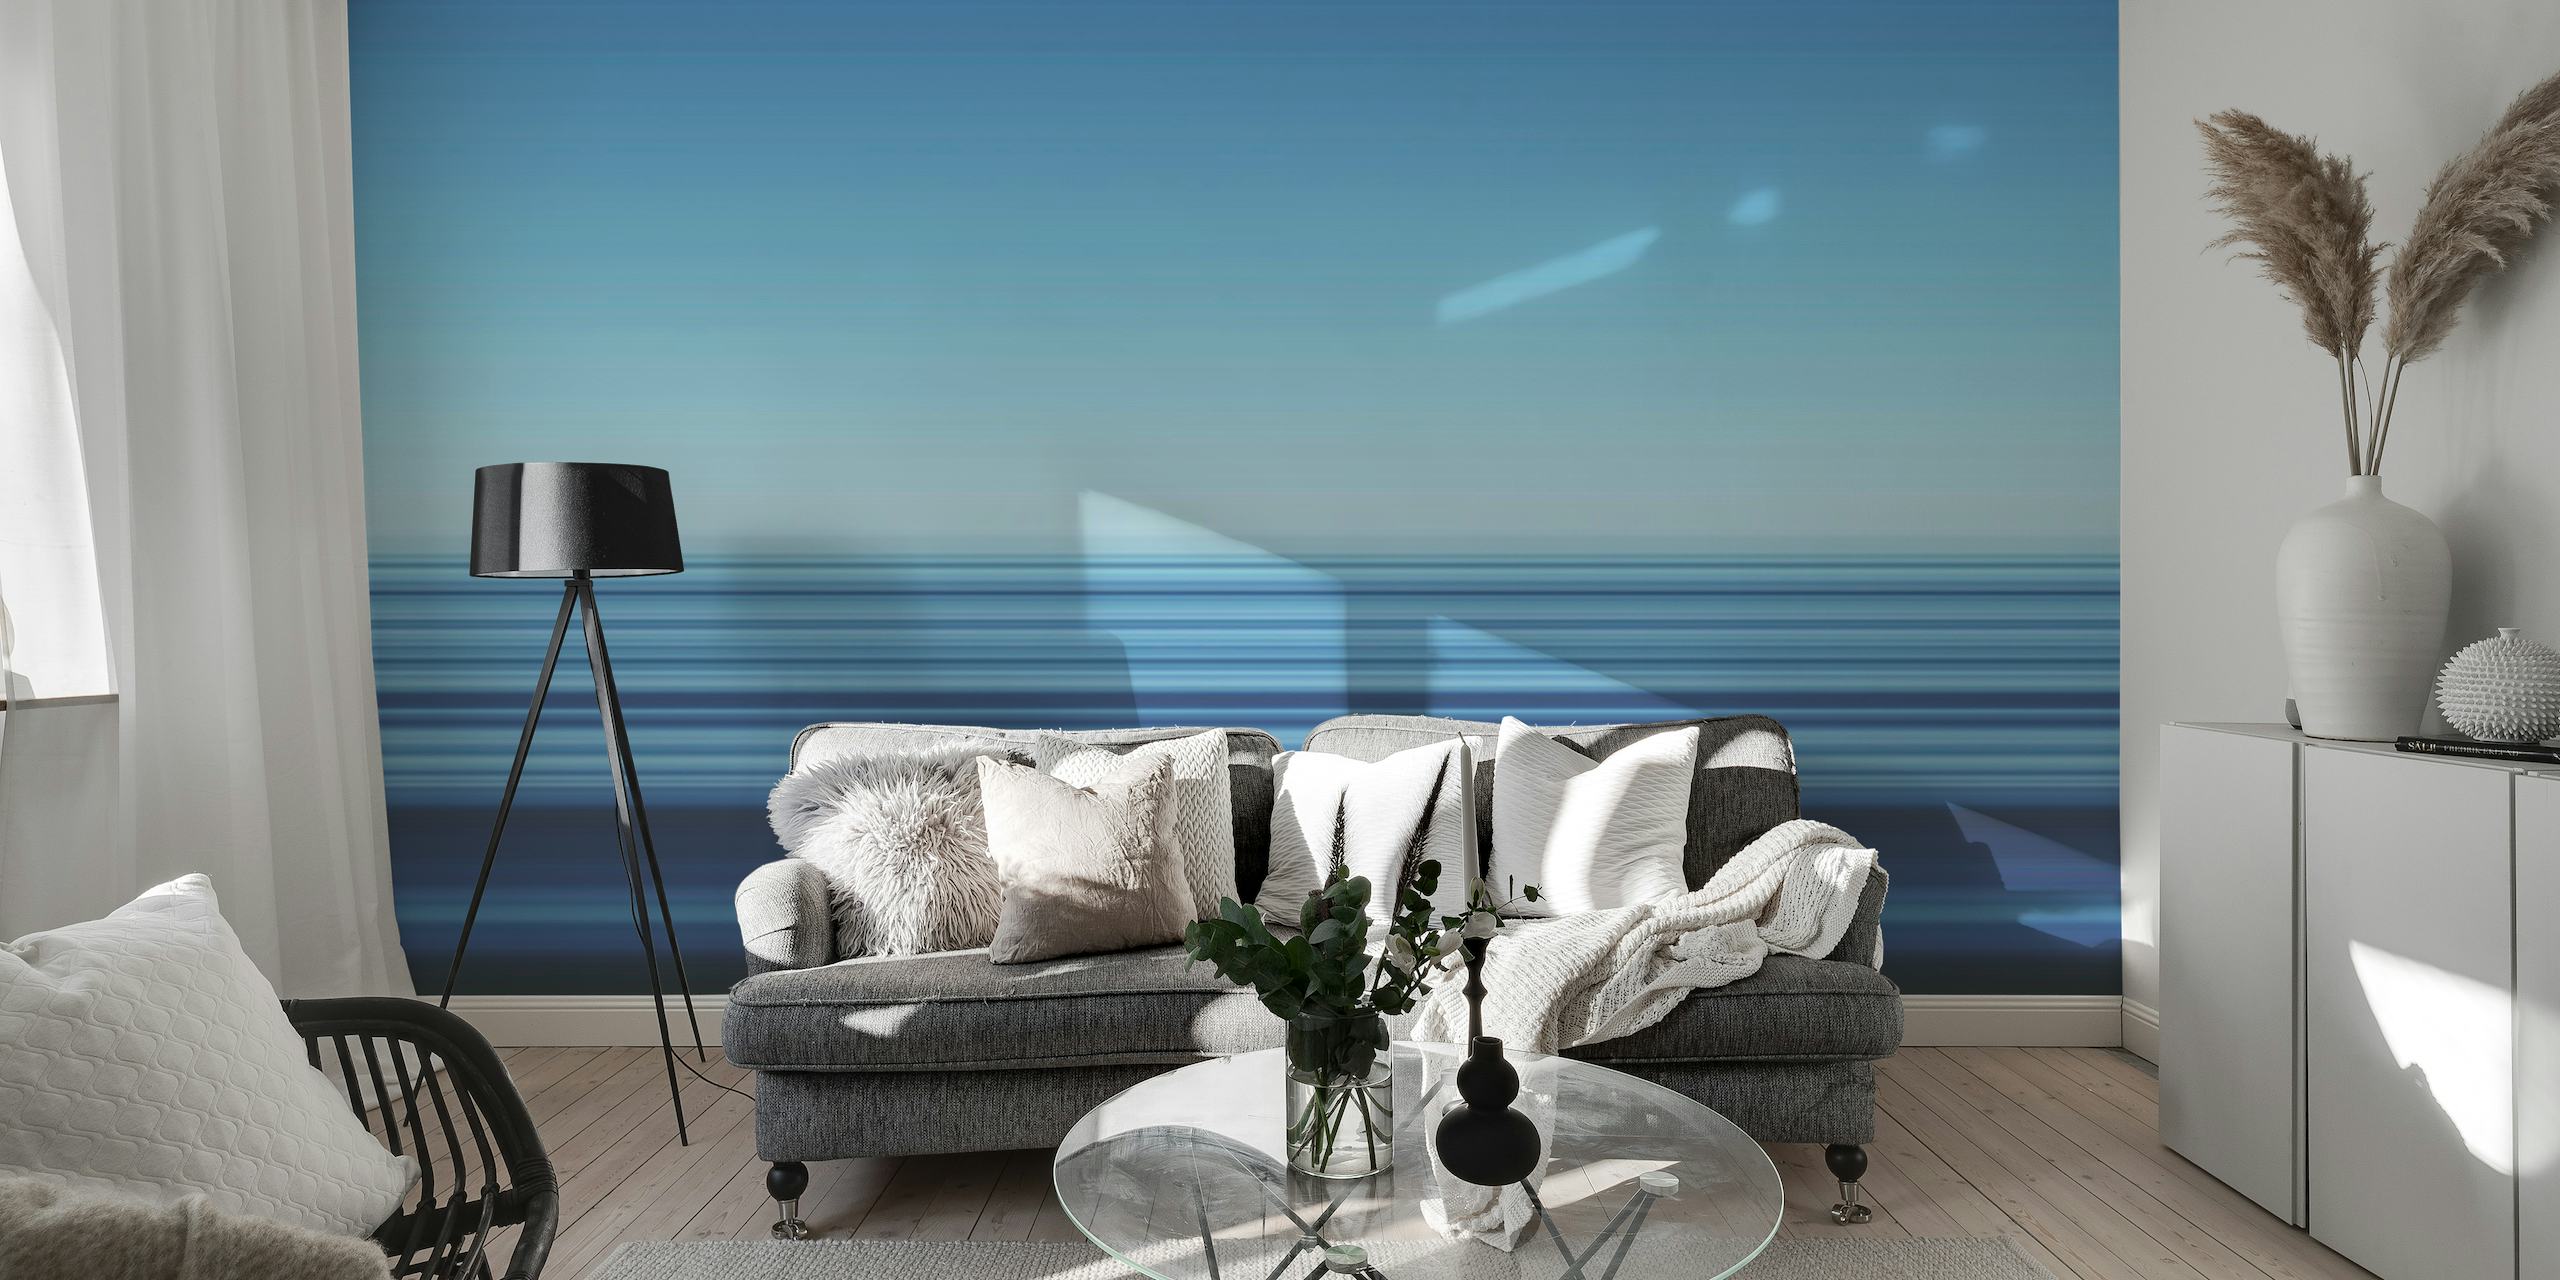 Abstract fotobehang met zeegezicht met horizontale blauwe lijnen die Playa des Ses Illetes voorstellen